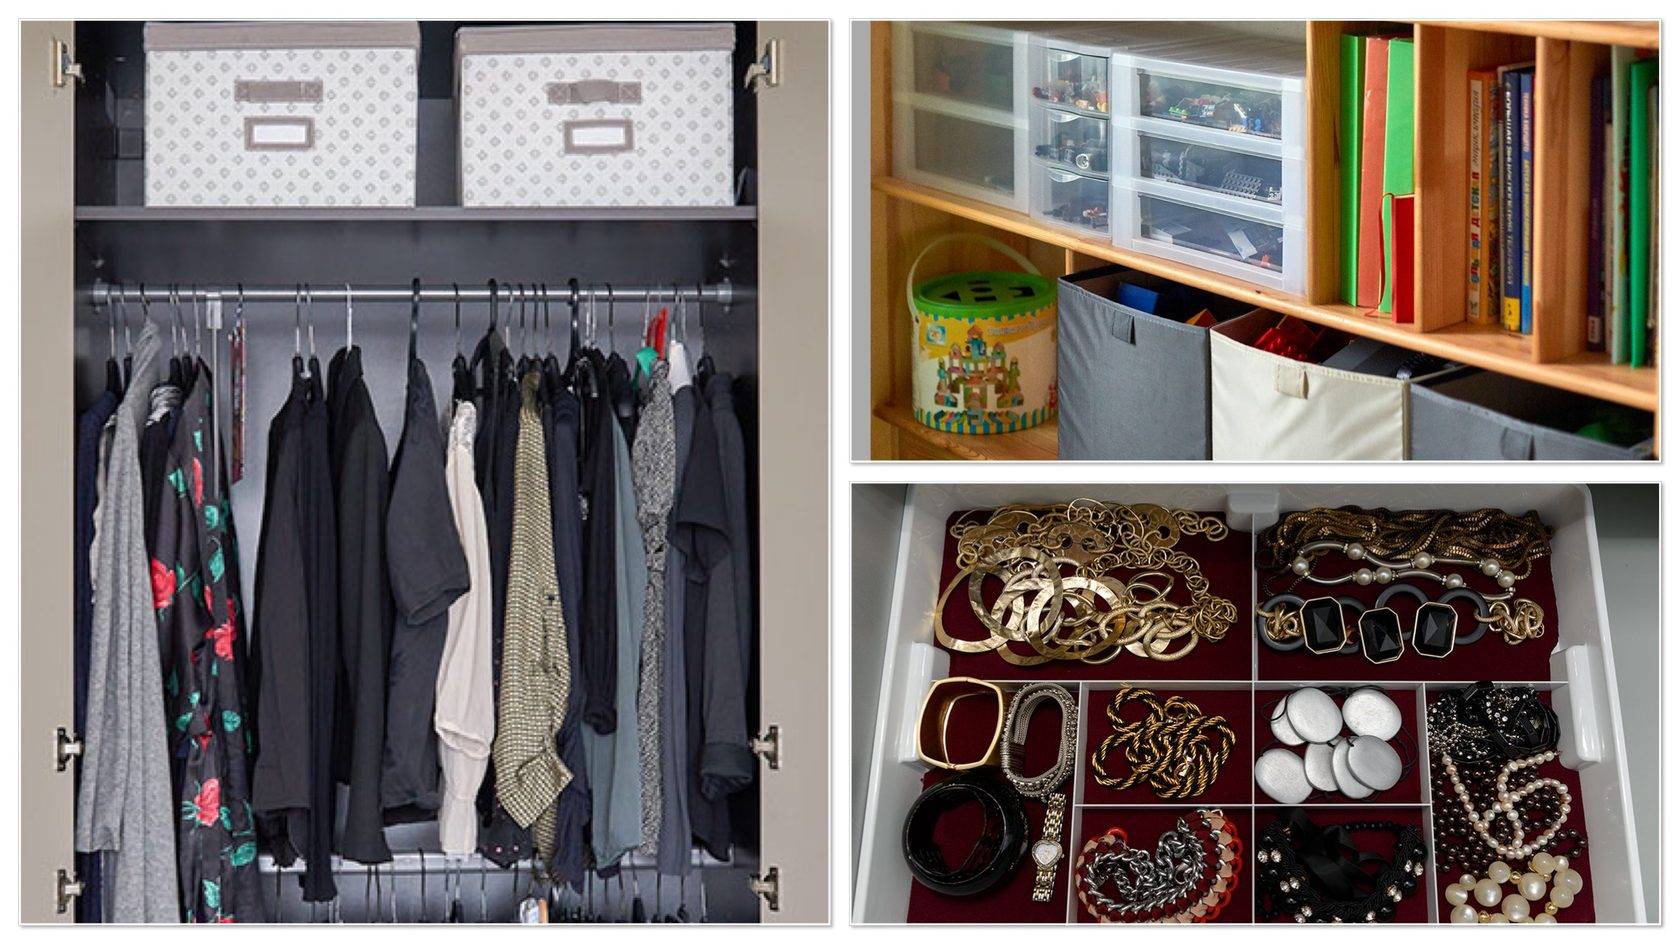 10 лучших идей хранения вещей в маленькой квартире